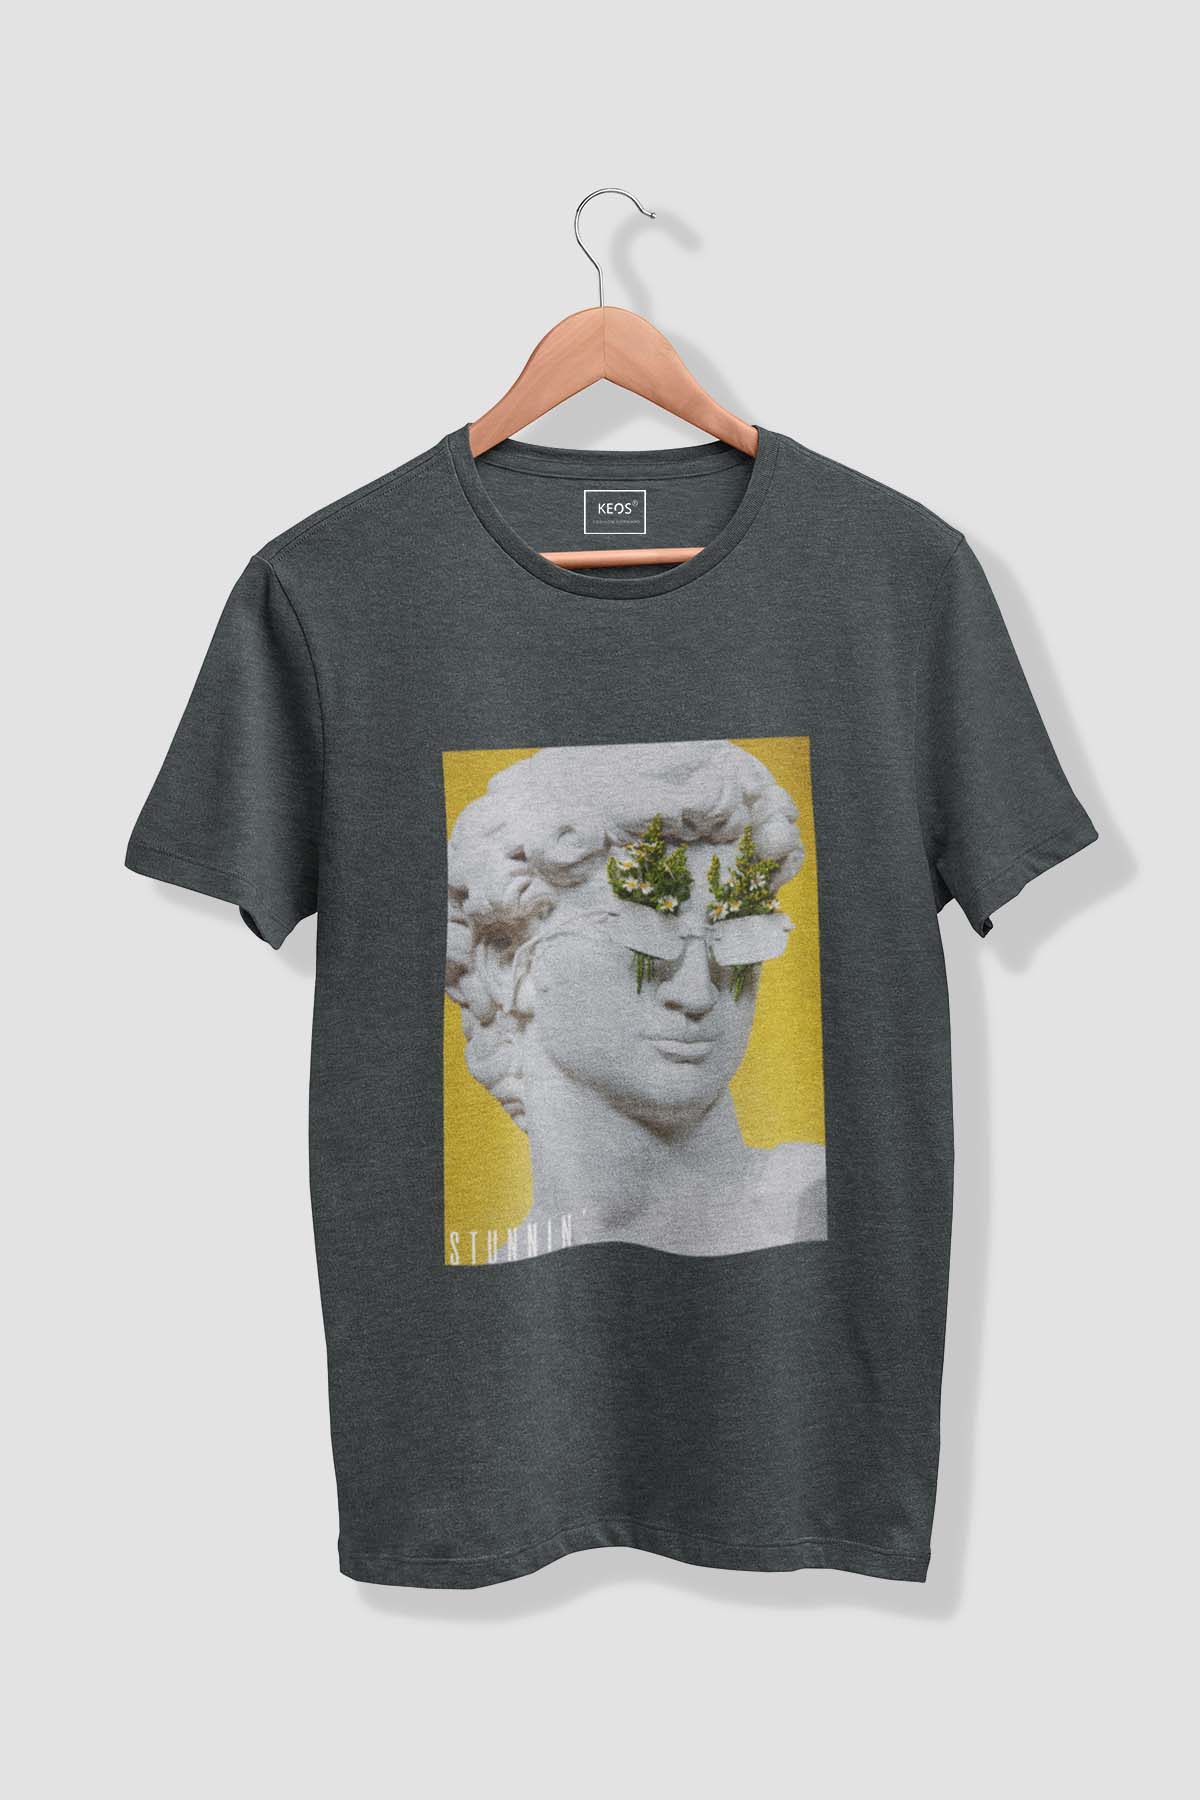 Stunnin' - Melange Cotton T-shirt - keos.life